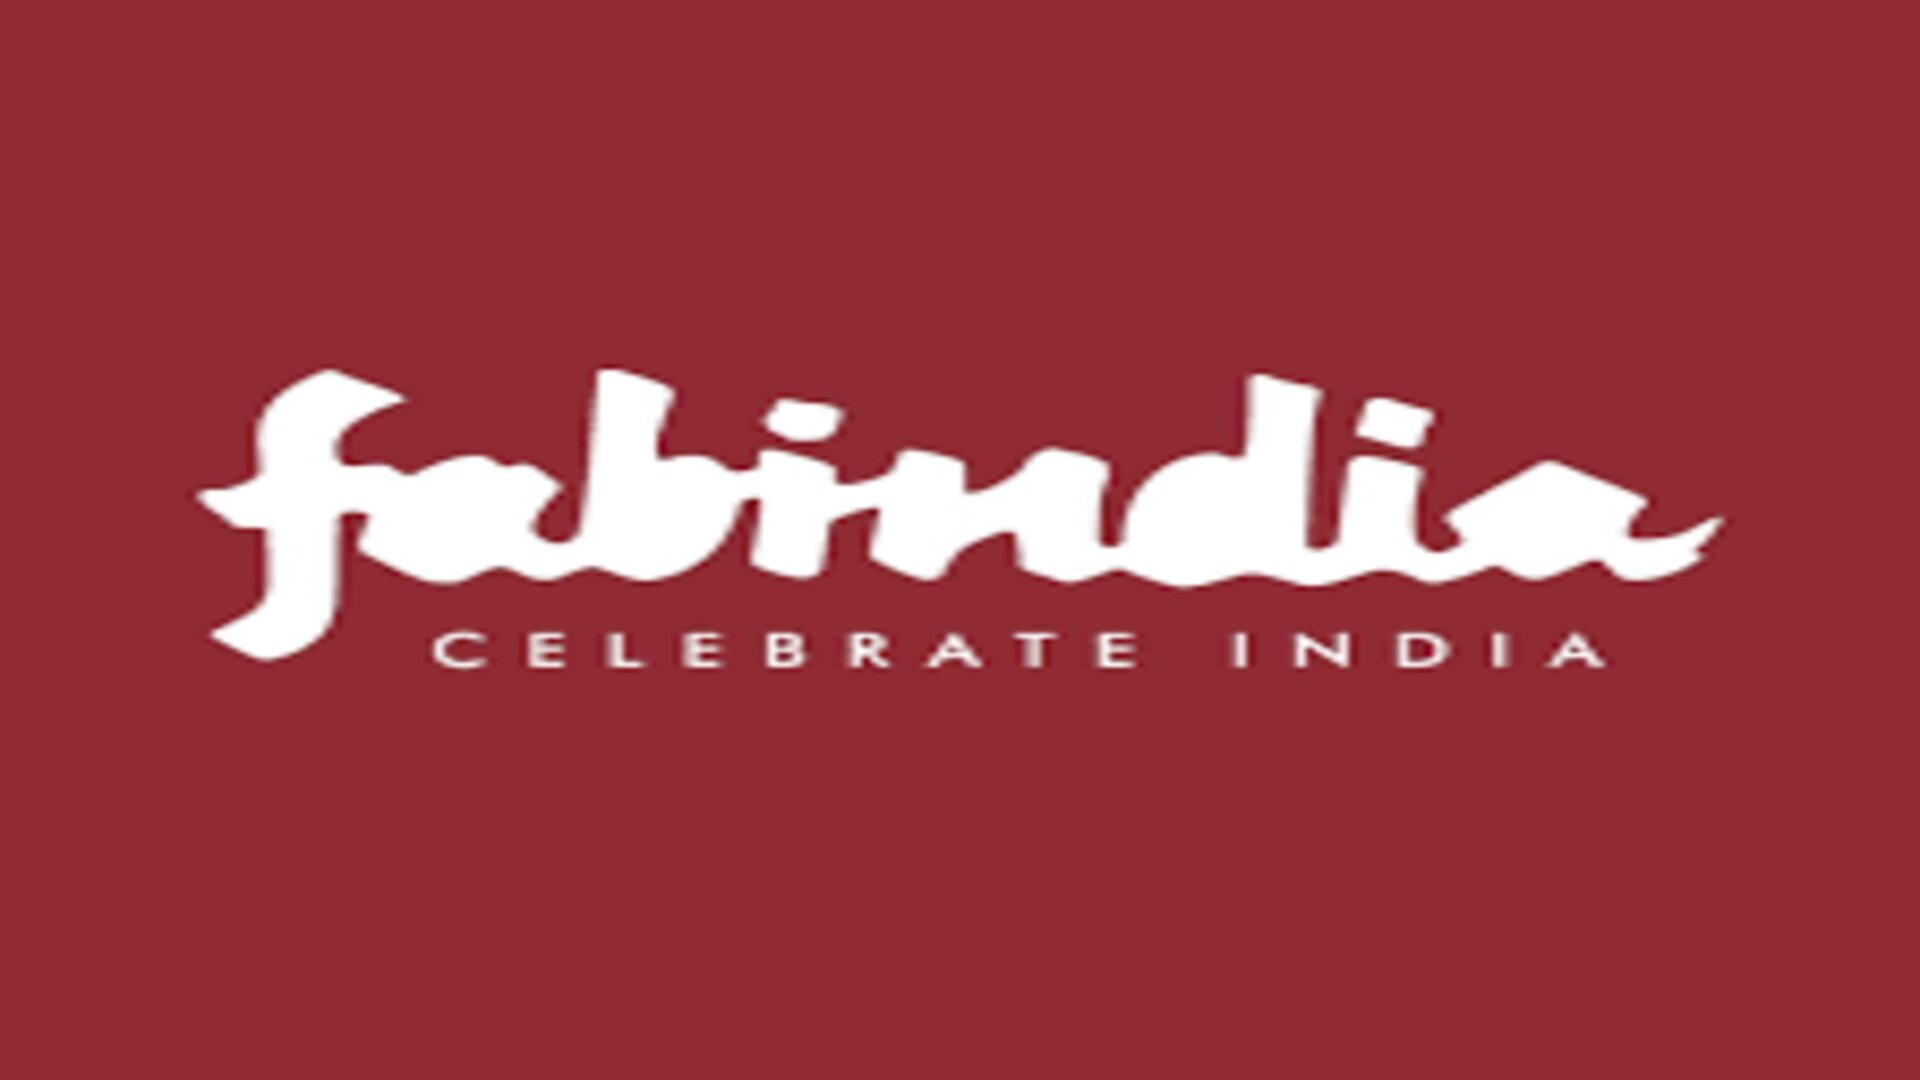 BJP leaders slam Fabindia for “Jashn-e-Riwaaz” advertisement for Diwali